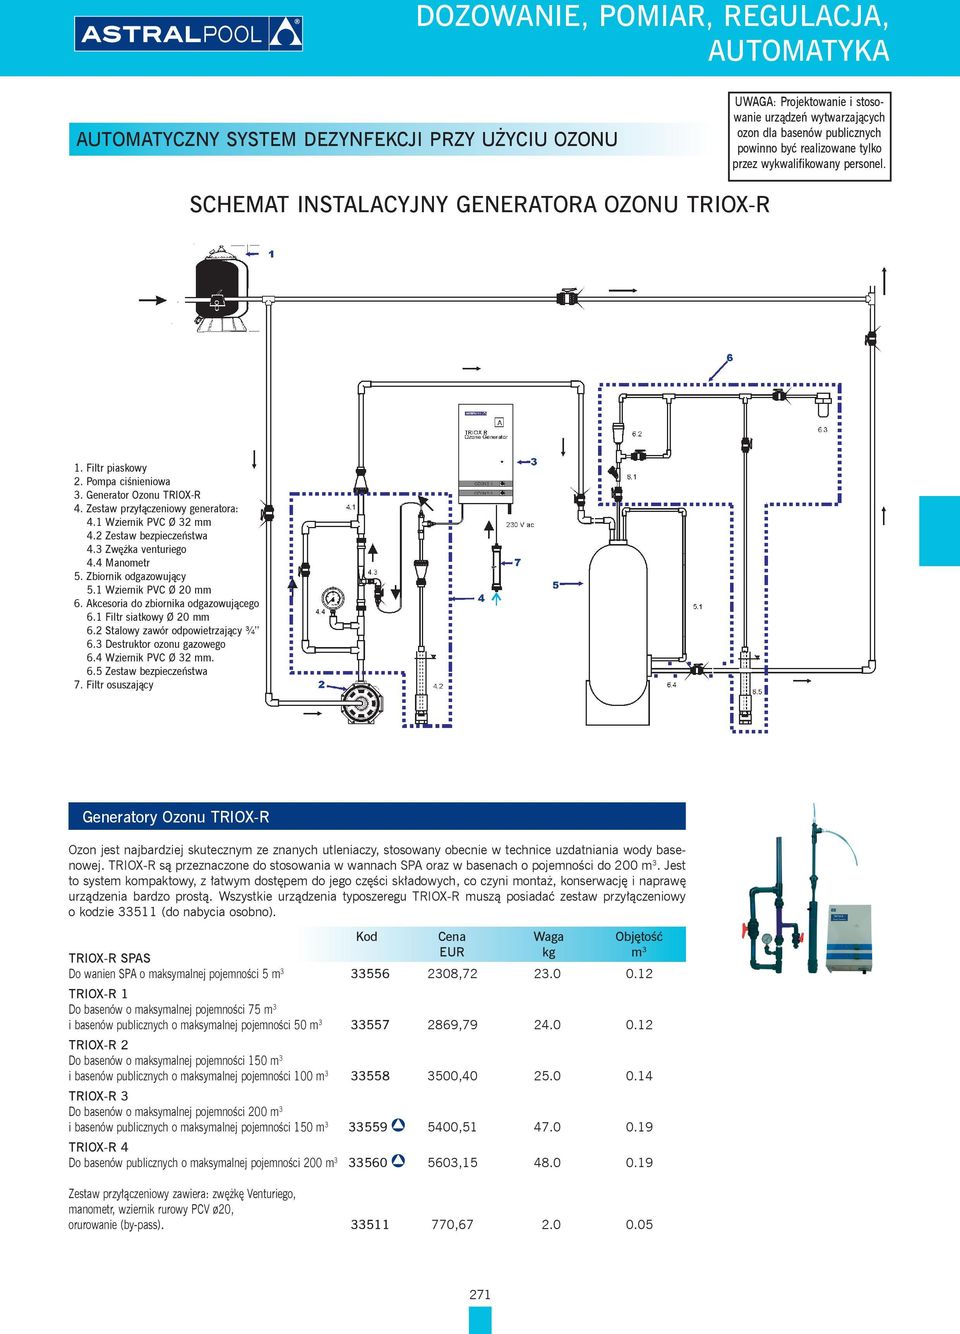 Zestaw przyłączeniowy generatora: 4.1 Wziernik PVC Ø 32 mm 4.2 Zestaw bezpieczeństwa 4.3 Zwężka venturiego 4.4 Manometr 5. Zbiornik odgazowujący 5.1 Wziernik PVC Ø 20 mm 6.